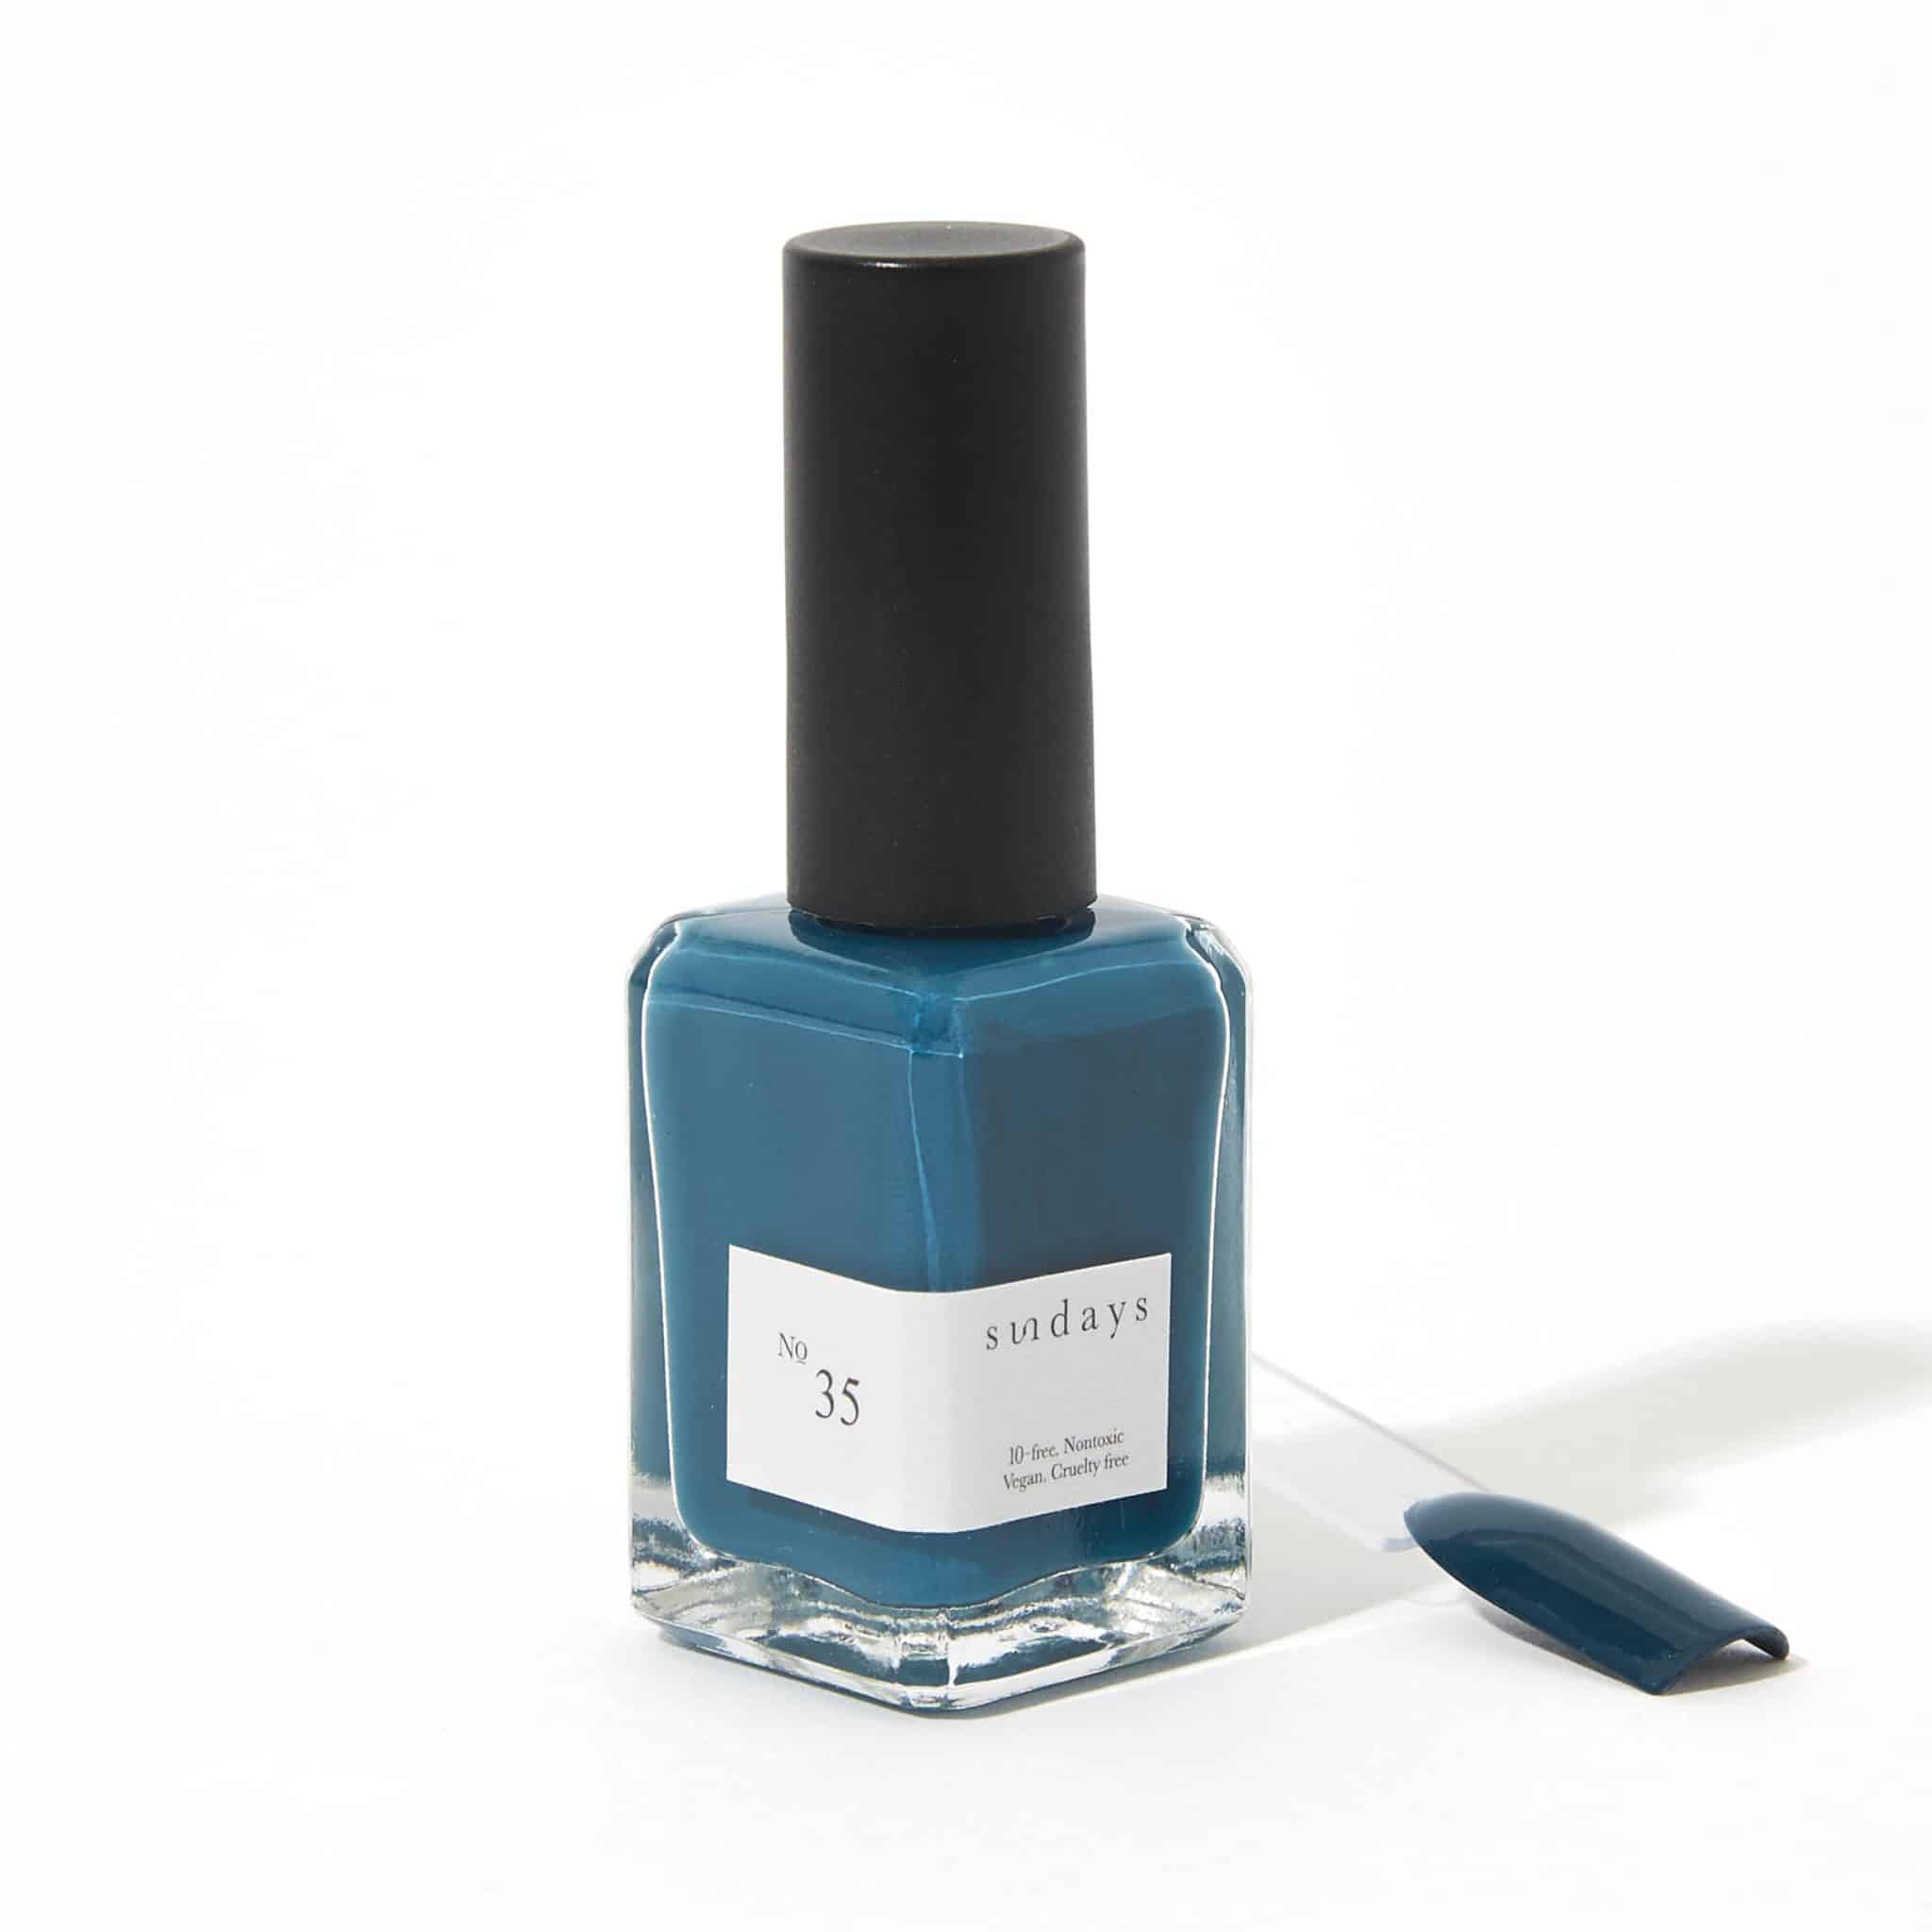 Non-toxic nail polish in royal blue